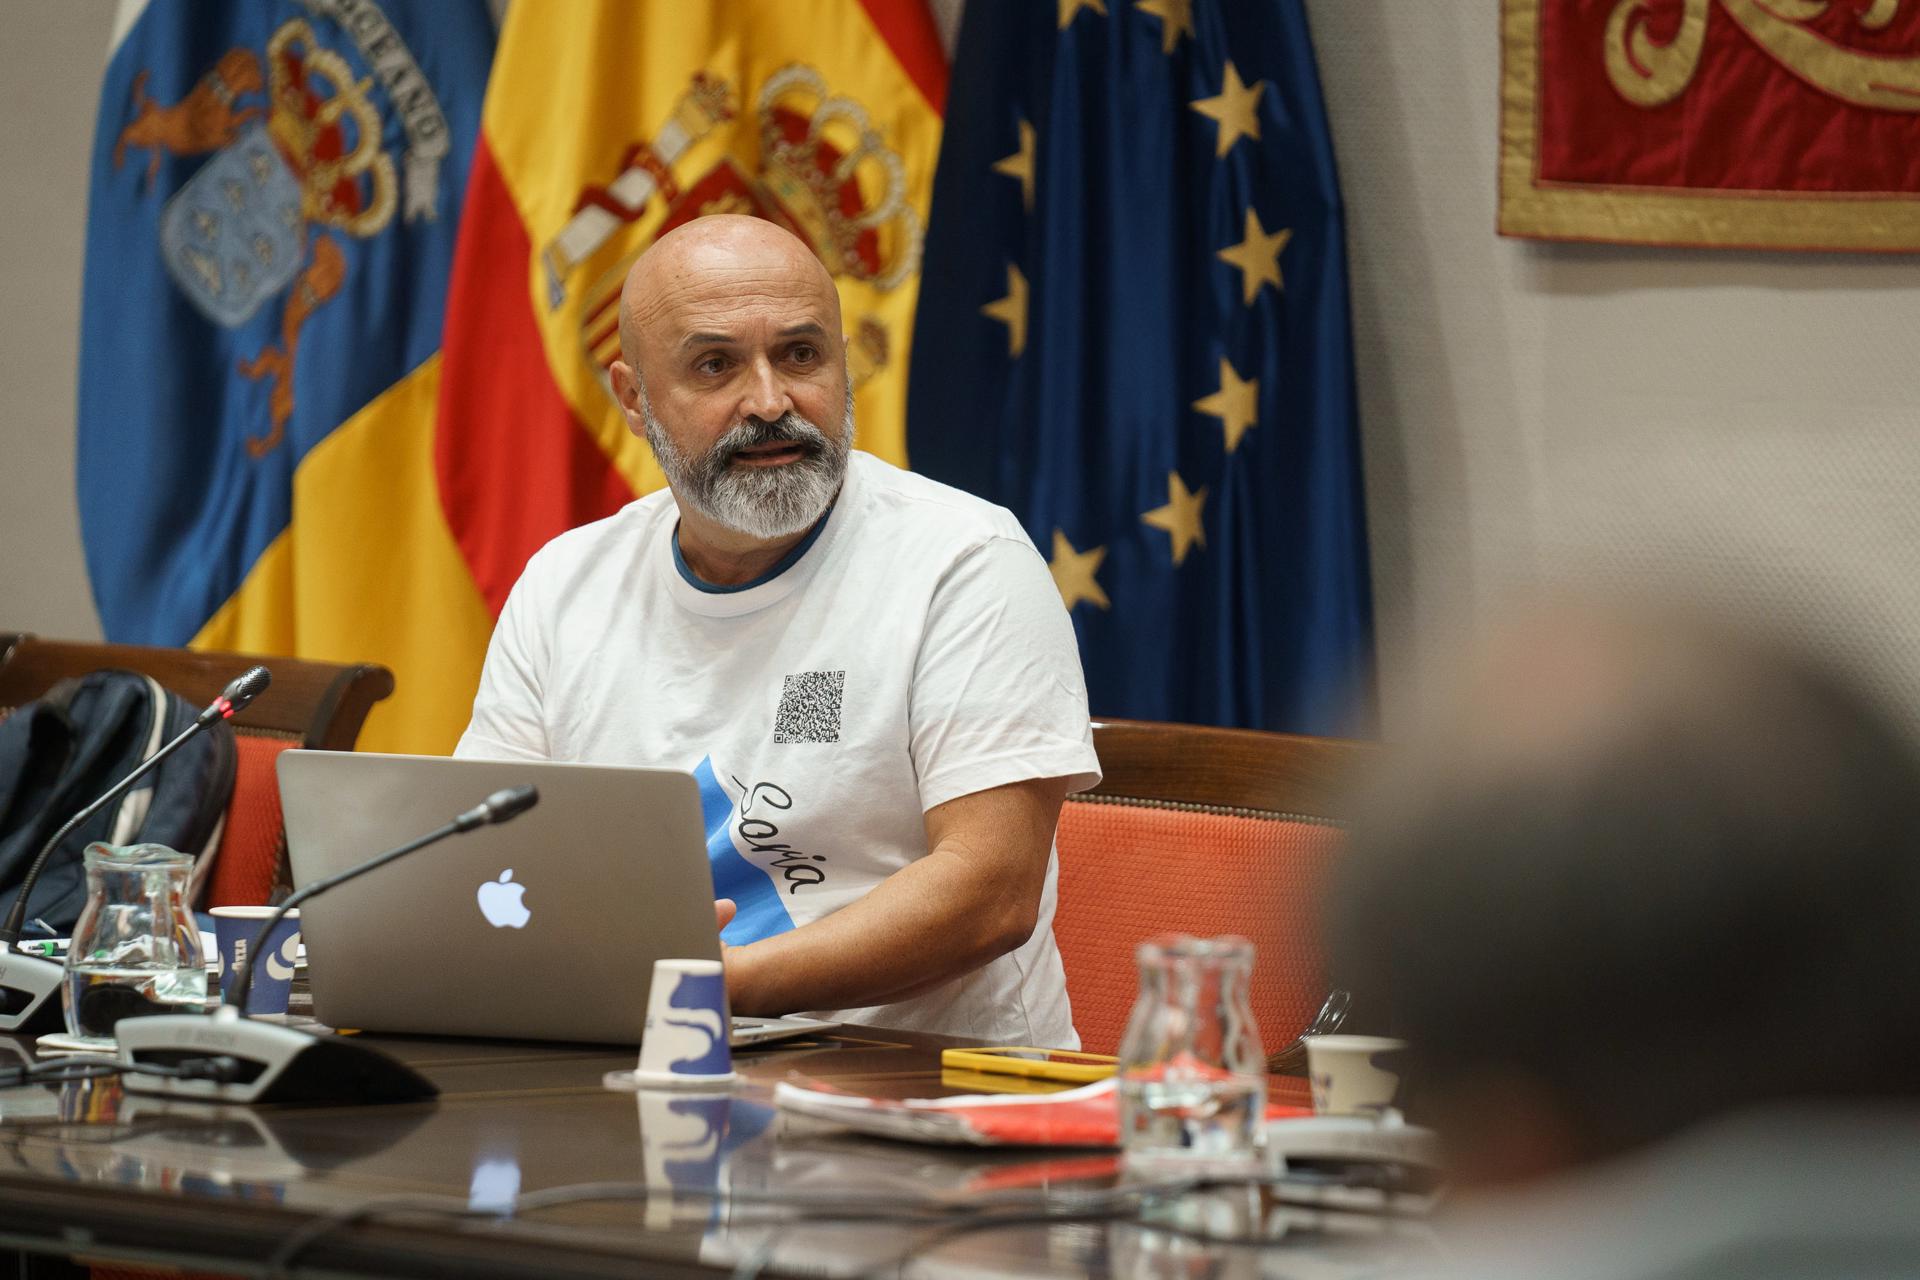 El representante de Intersindical Canaria Pedro Pablo Medina comparece este lunes en el Parlamento regional para tratar sobre el cuarto Plan Canario sobre Adicciones 2022-2024. EFE/Ramón de la Rocha